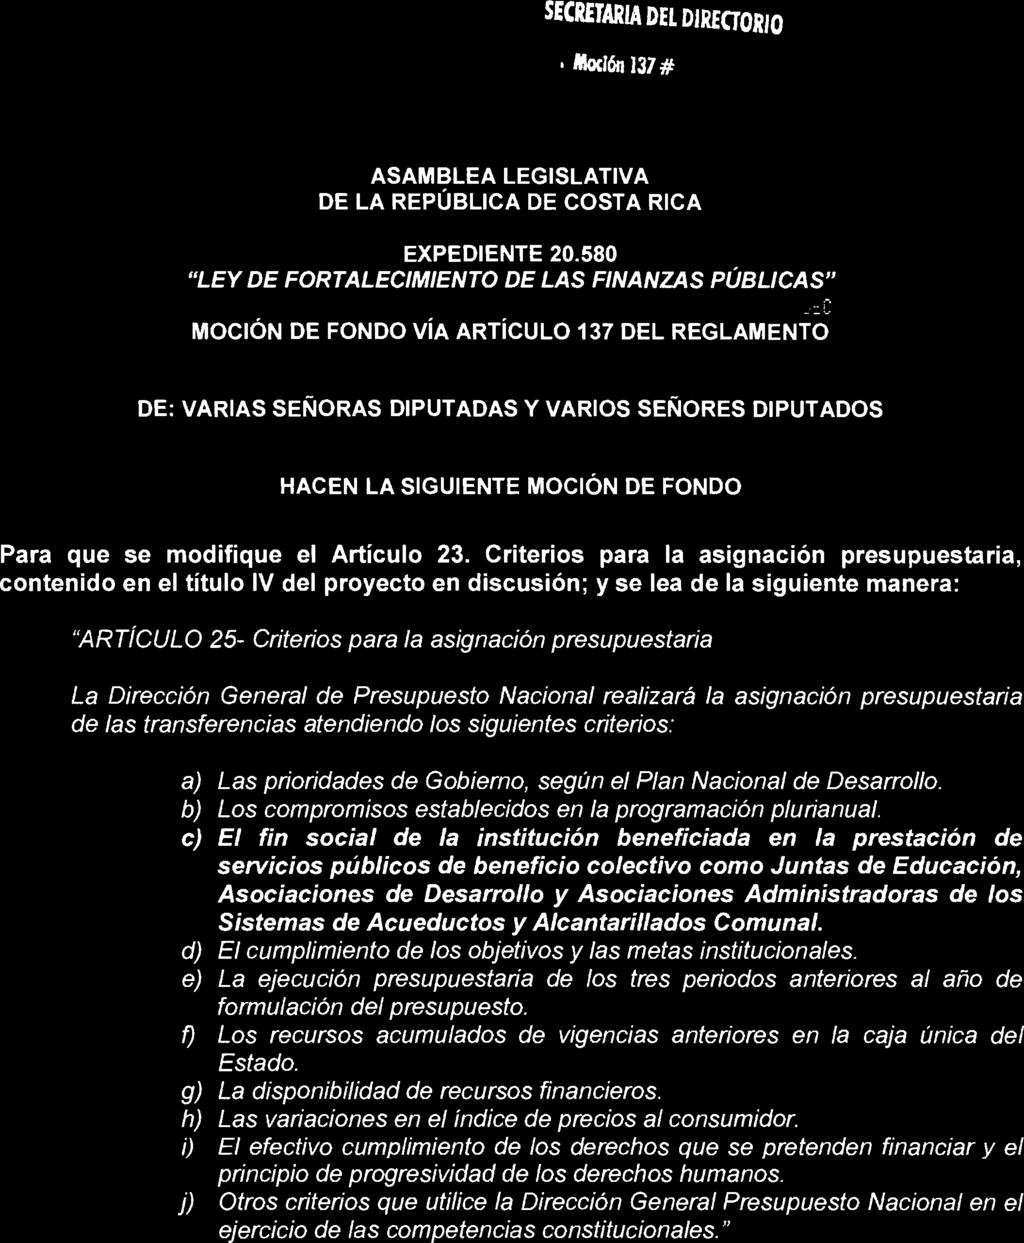 Moción 137 # ASAMBLEA LEGISLATIVA DE LA REPÚBLICA DE COSTA RICA EXPEDIENTE 20.580 Mrrjta MaU:rita R.